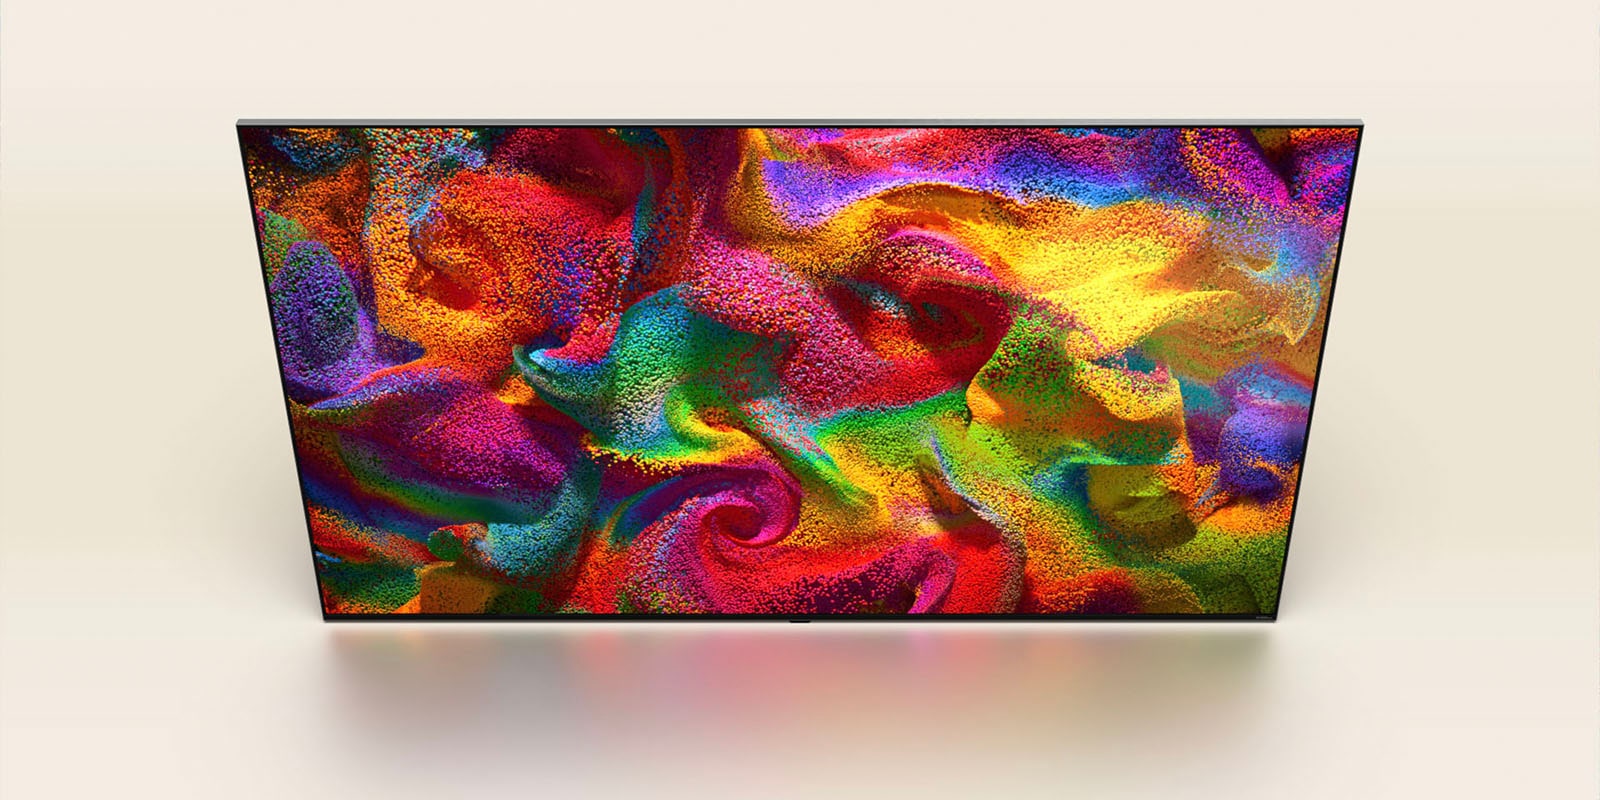 色彩粒子躍然於螢幕上，然後在 LG TV 上，像素慢慢變成牆面塗上繽紛圖案的特寫圖。